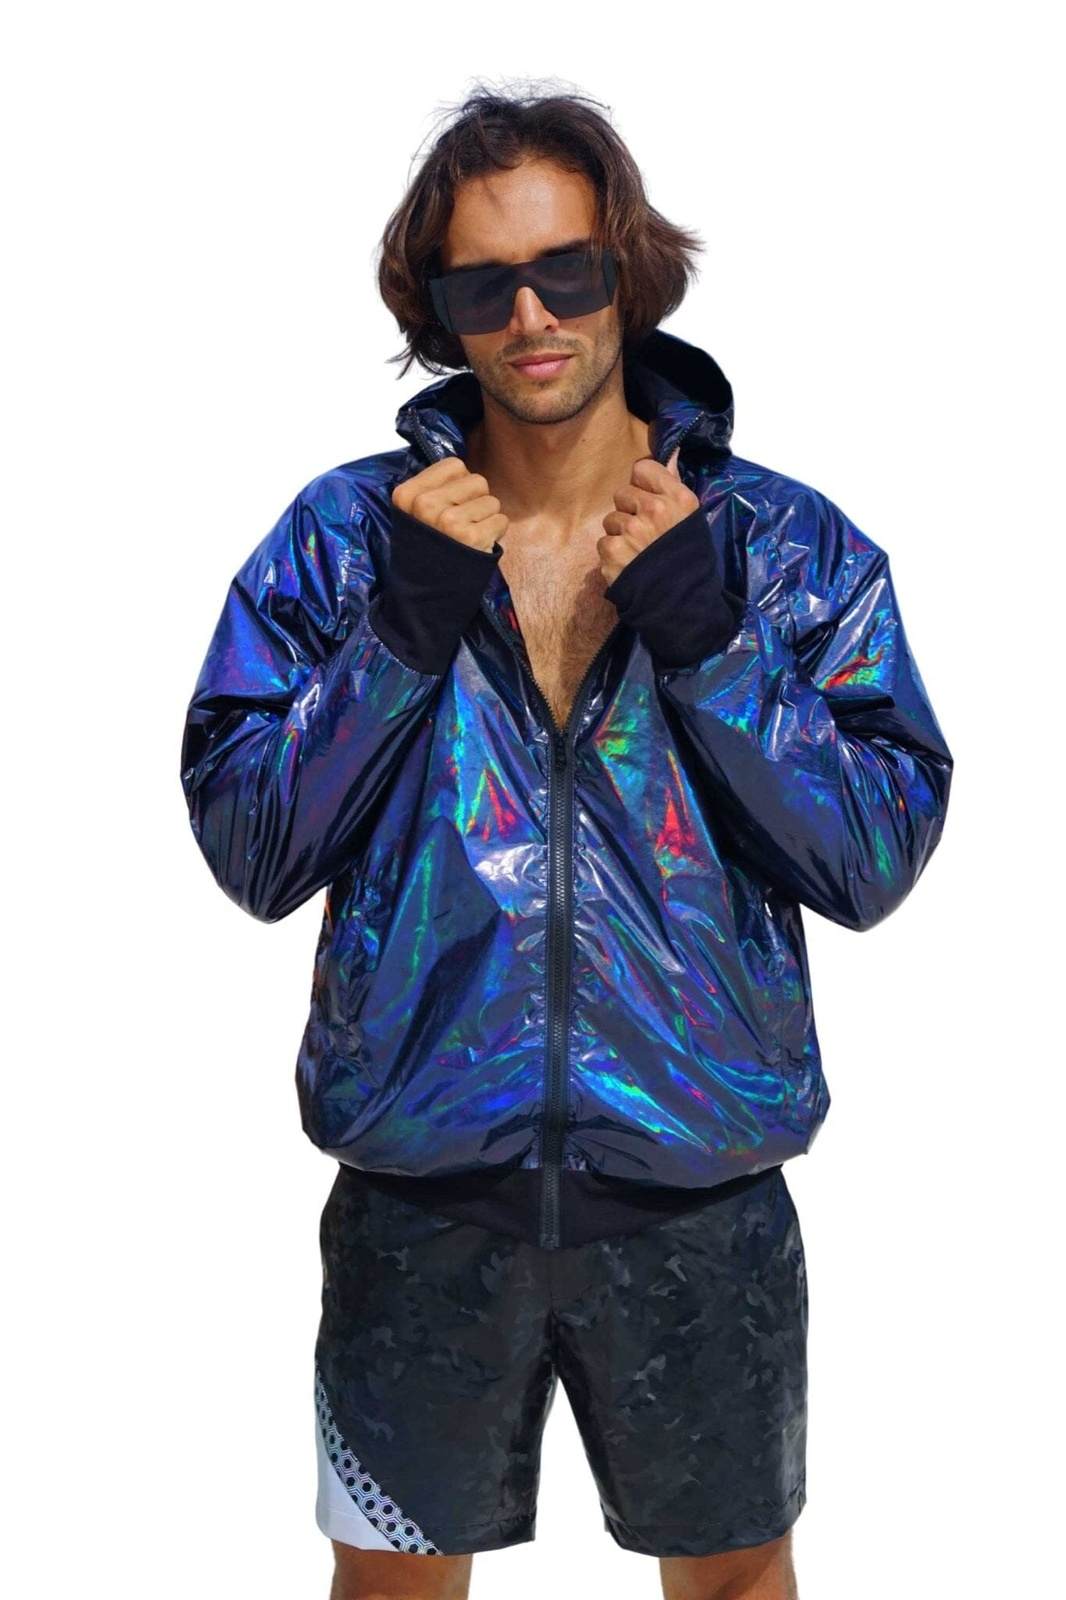 Stijg Calamiteit Absorberend Mens Waterproof Festival Jacket | Love Khaos Streetwear & Rave wear